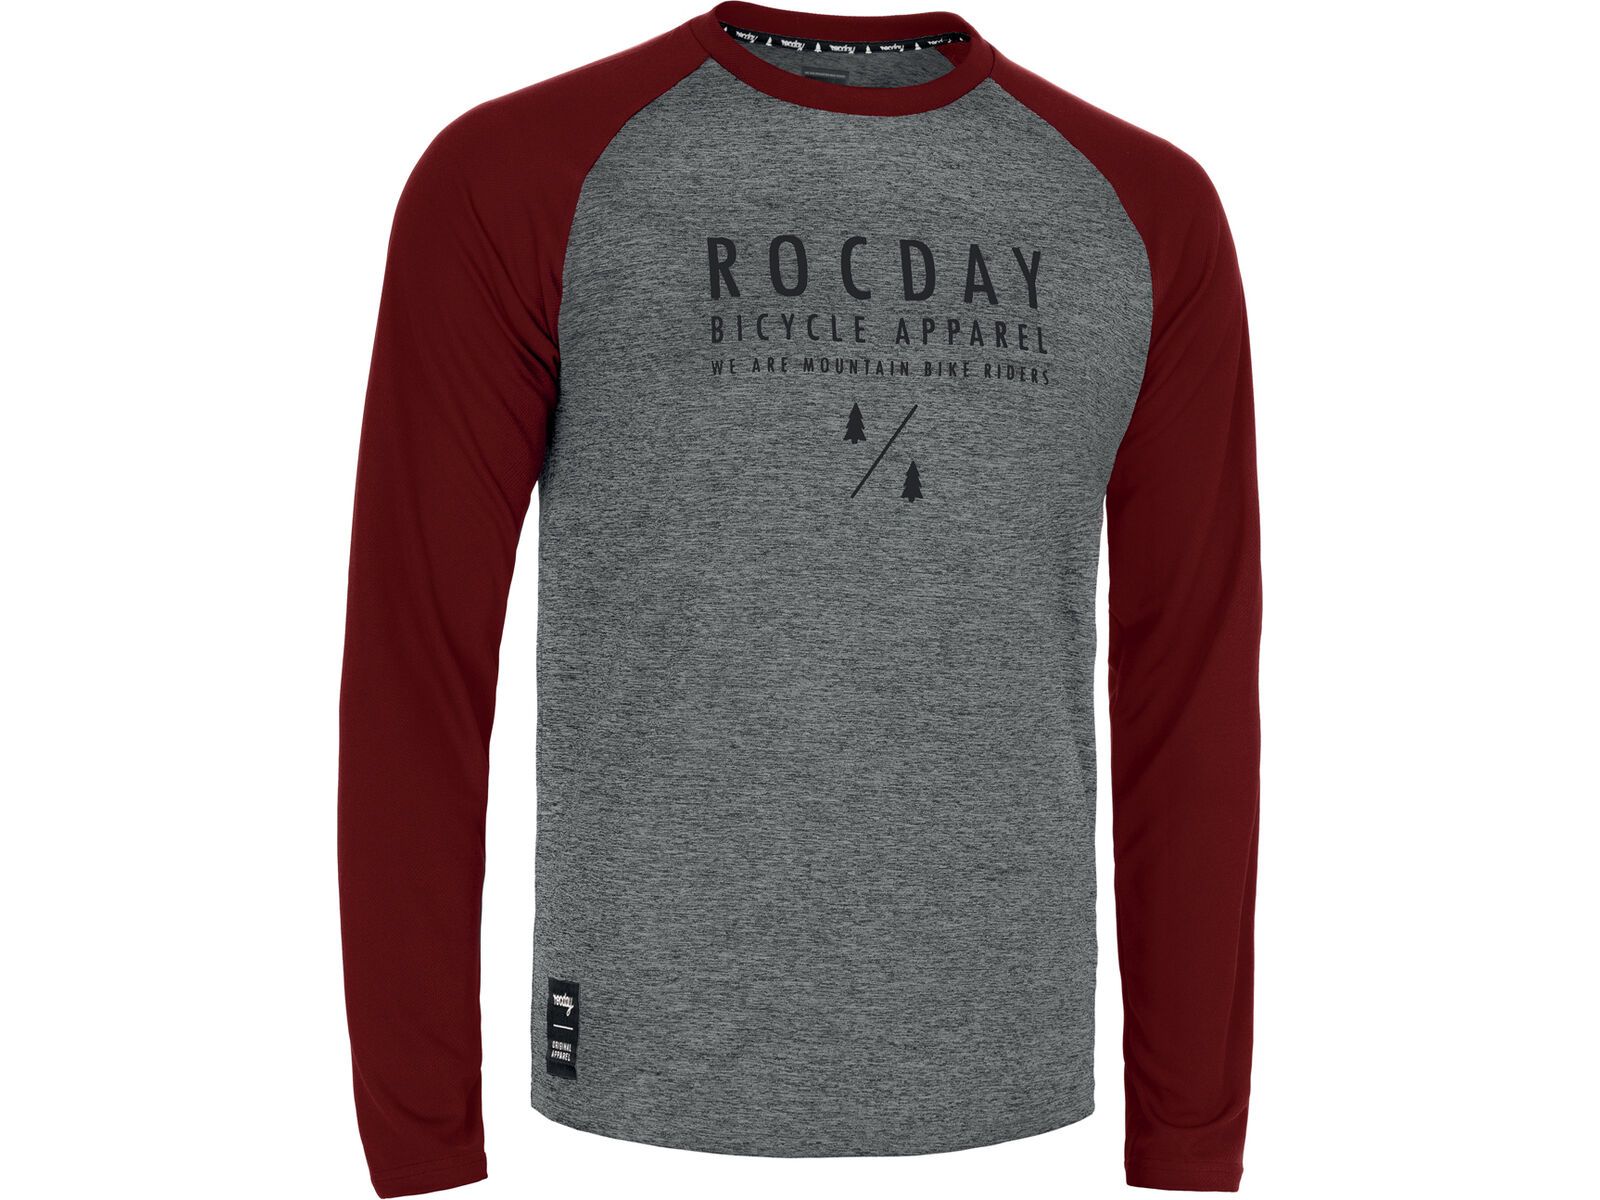 Rocday Manual Jersey, melange / dark red | Bild 1